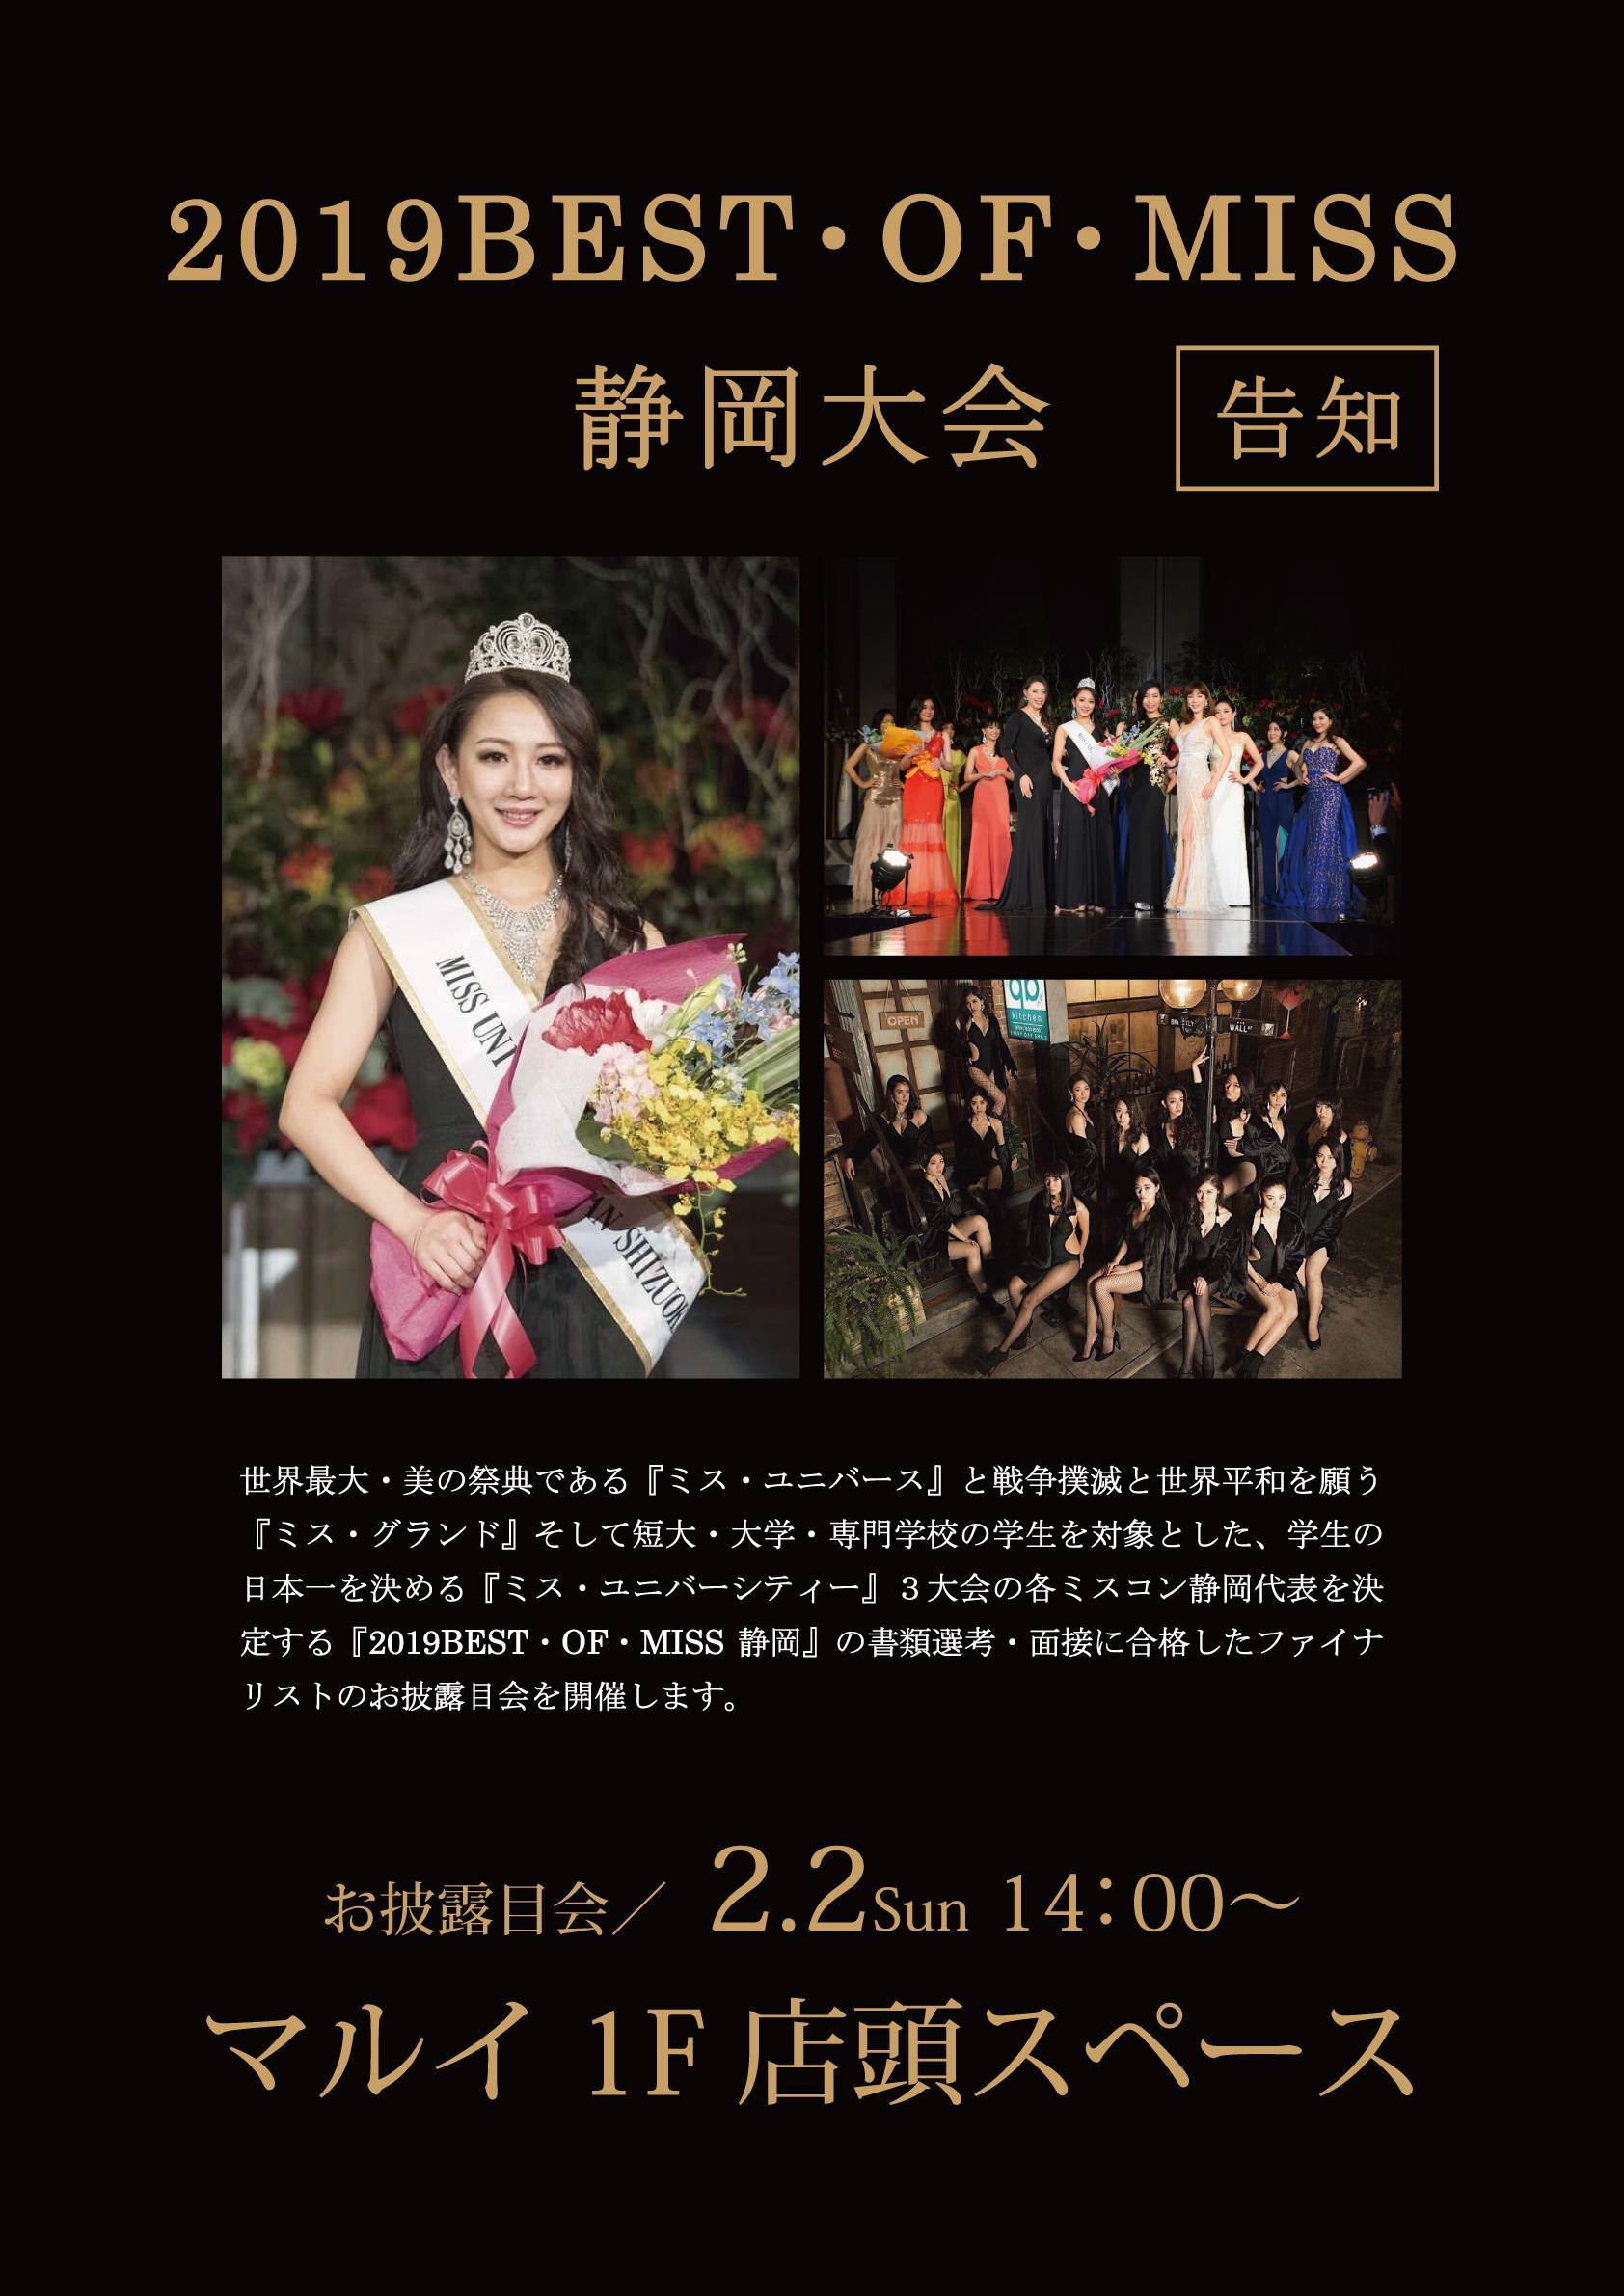 静岡マルイに 19 Best Of Miss静岡 ファイナリストが集合 お披露目会を開催 株式会社丸井グループのプレスリリース